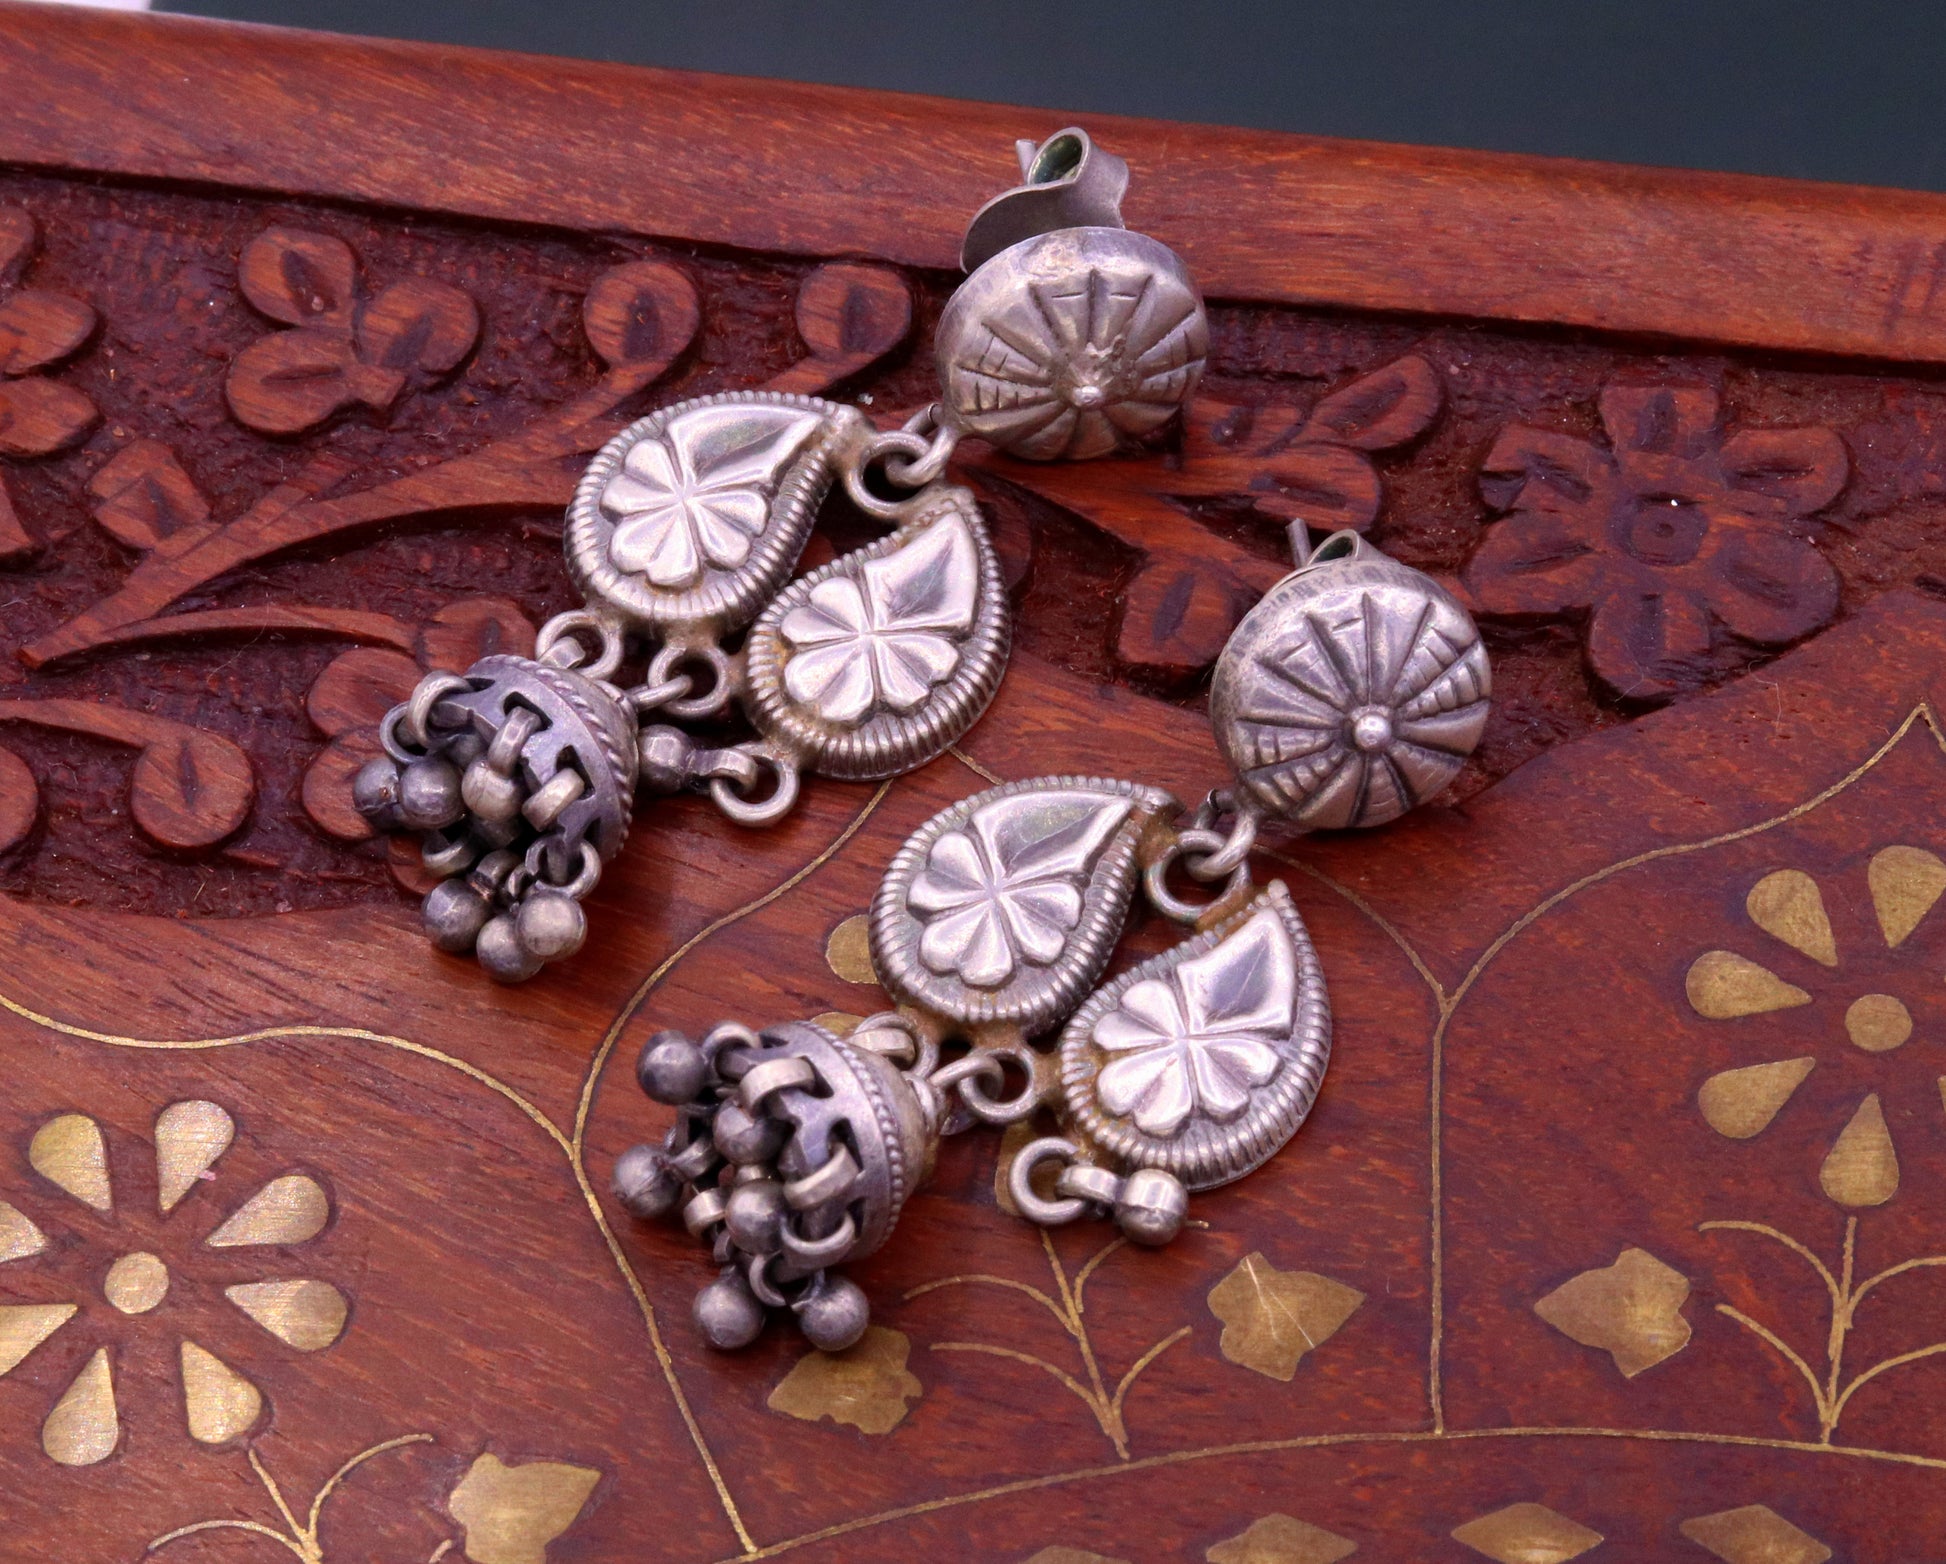 925 sterling silver handmade vintage design mango shape work stud earring jhumki, chandelier style earring jewelry ,tribal belly dance s699 - TRIBAL ORNAMENTS